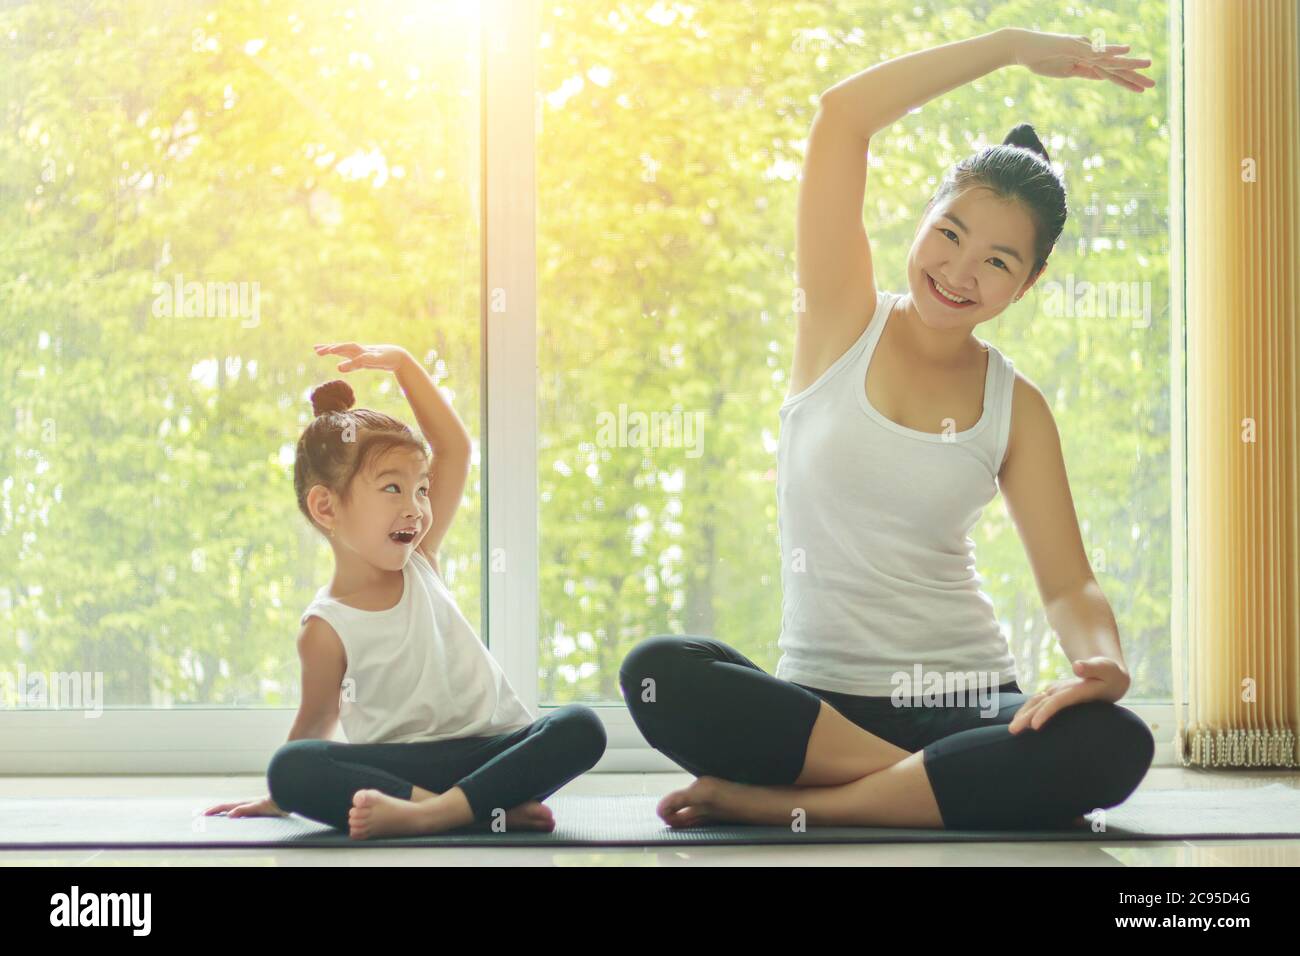 Asiatische Mama Yoga zu Hause mit einer entzückenden Tochter neben ihr sitzen, versuchen, die Haltung der Mutter mit einem lächelnden Gesicht zu imitieren Stockfoto